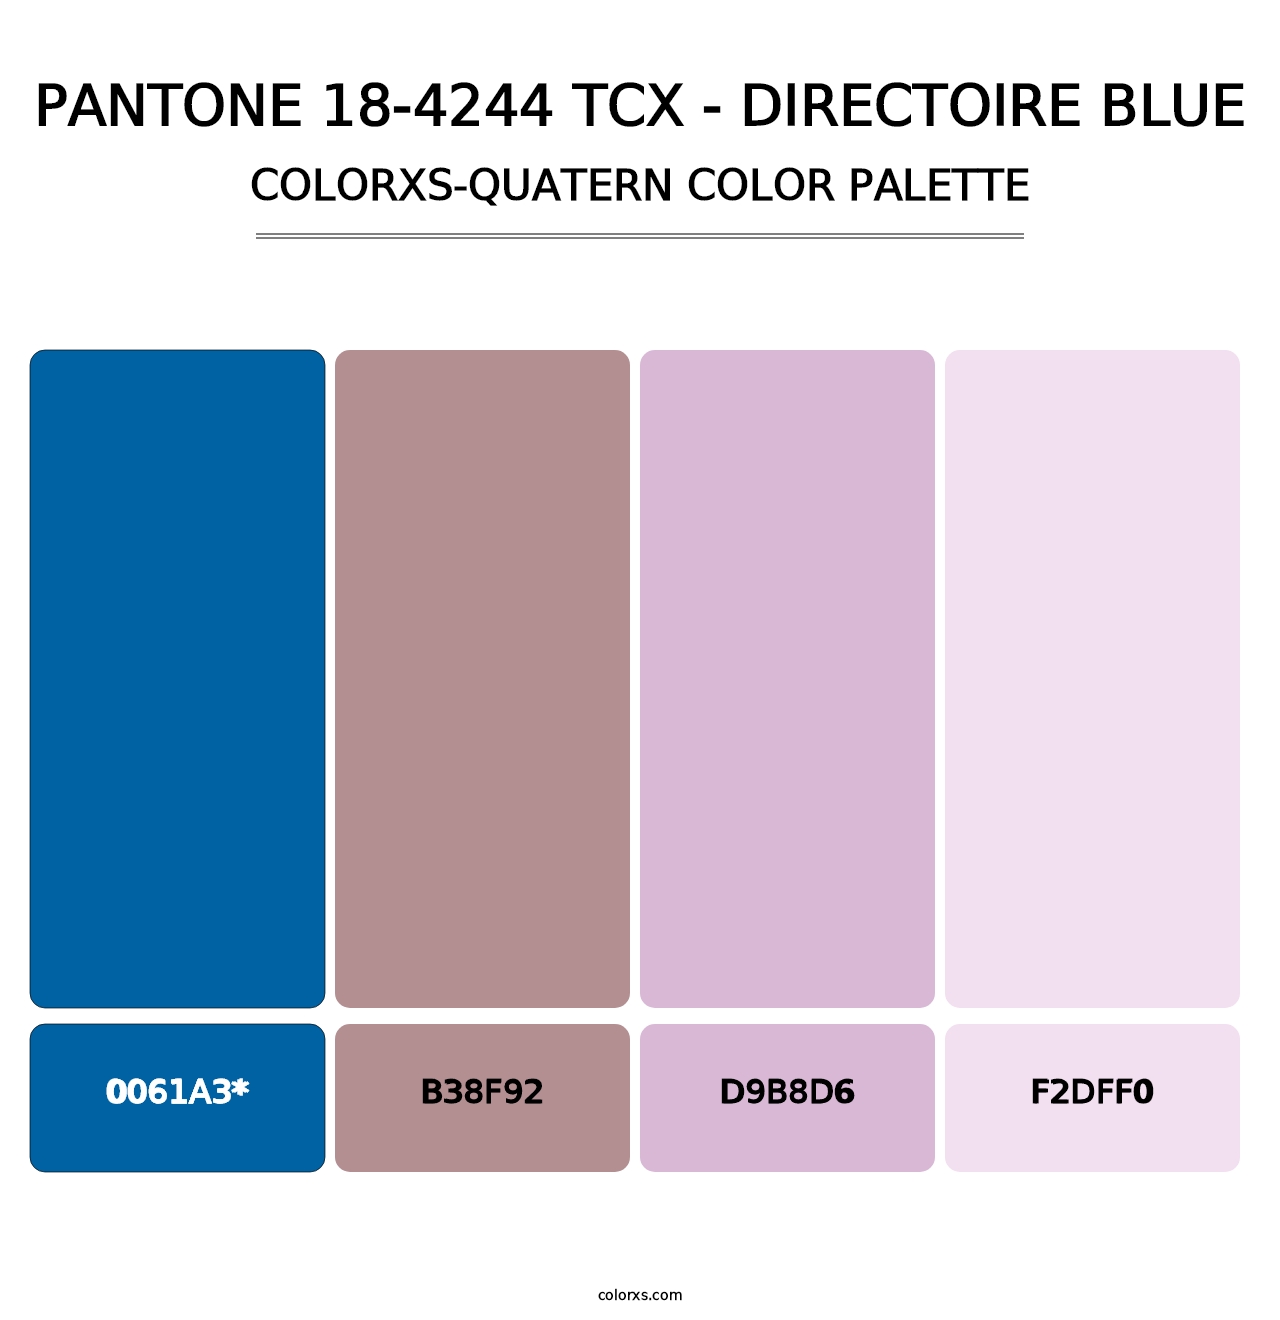 PANTONE 18-4244 TCX - Directoire Blue - Colorxs Quatern Palette